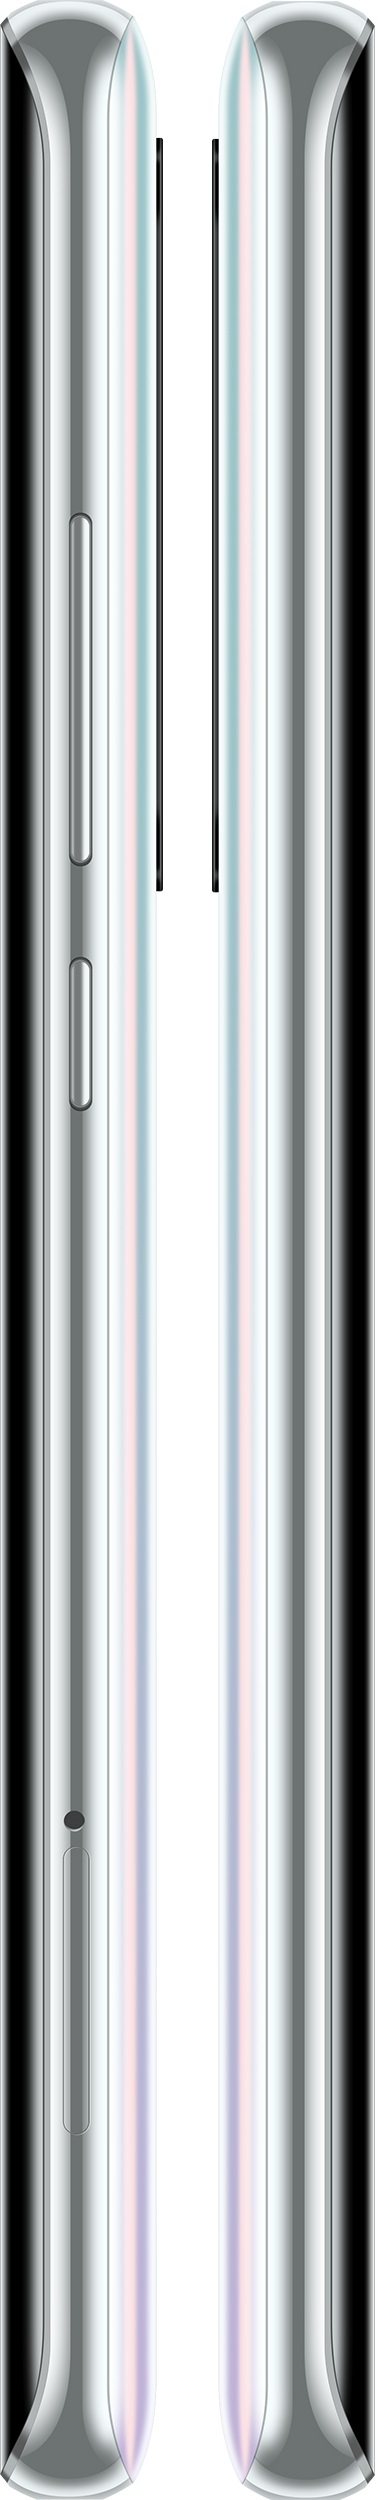 Xiaomi Mi Note 10 Lite 8/128GB (RU)